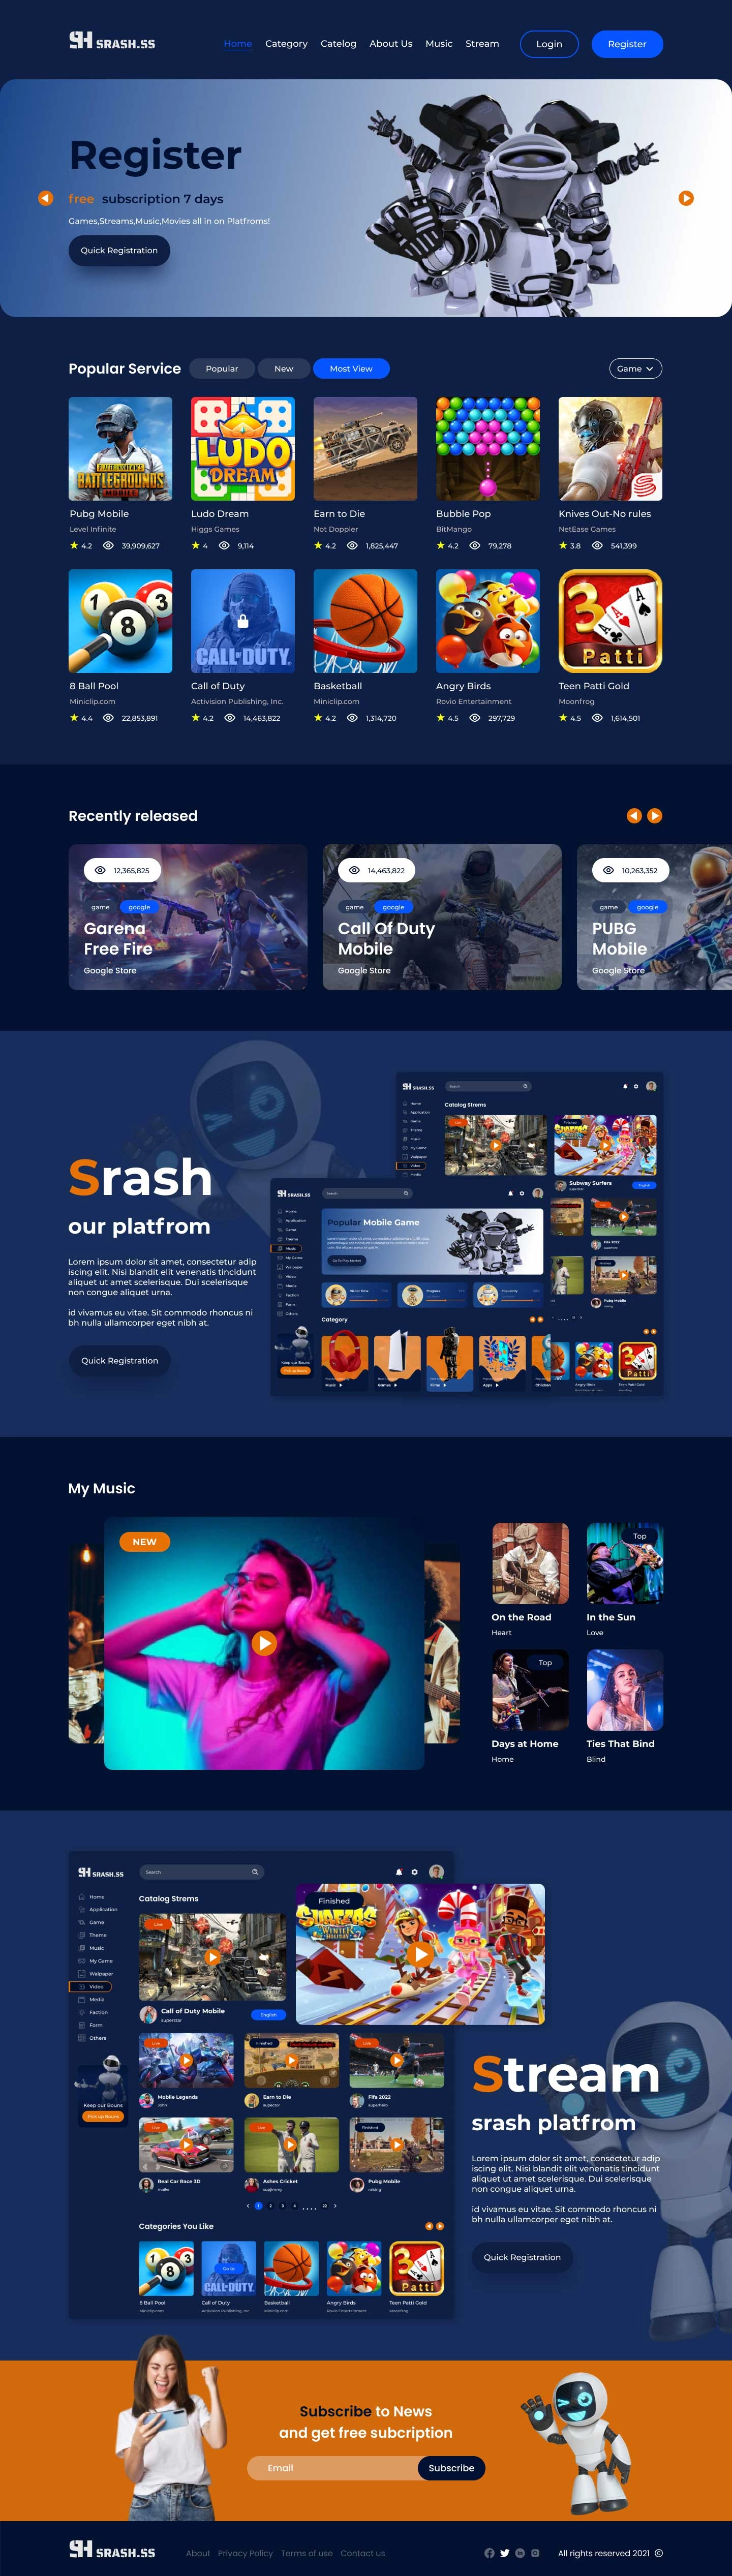 Srash 游戏媒体平台UI设计素材下载 UI 第2张